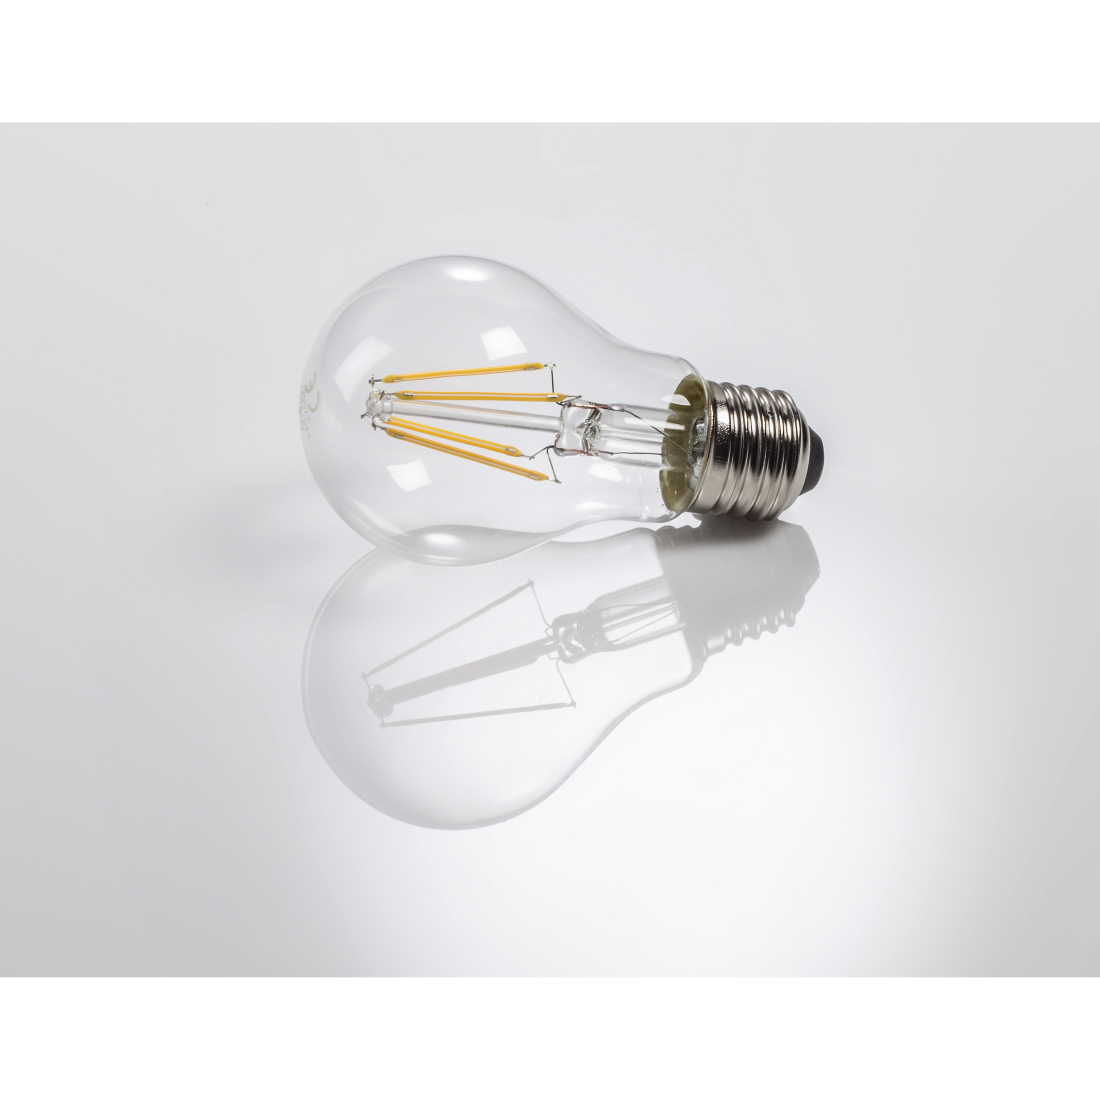 abx3 Druckfähige Abbildung 3 - Xavax, LED-Filament, E27, 806lm ersetzt 60W, Glühlampe, Warmweiß, Klar